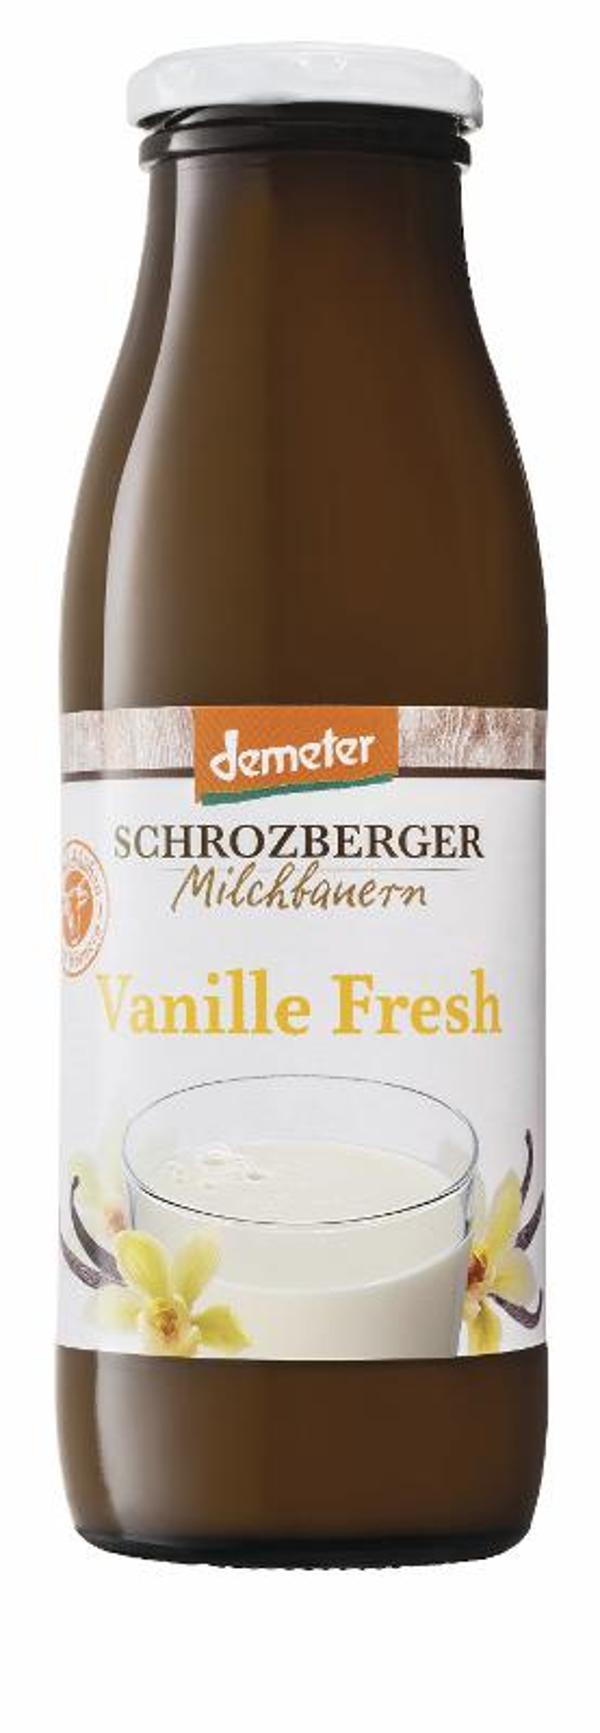 Produktfoto zu Schwedenmilch, Vanille Fresh von Schrozberger